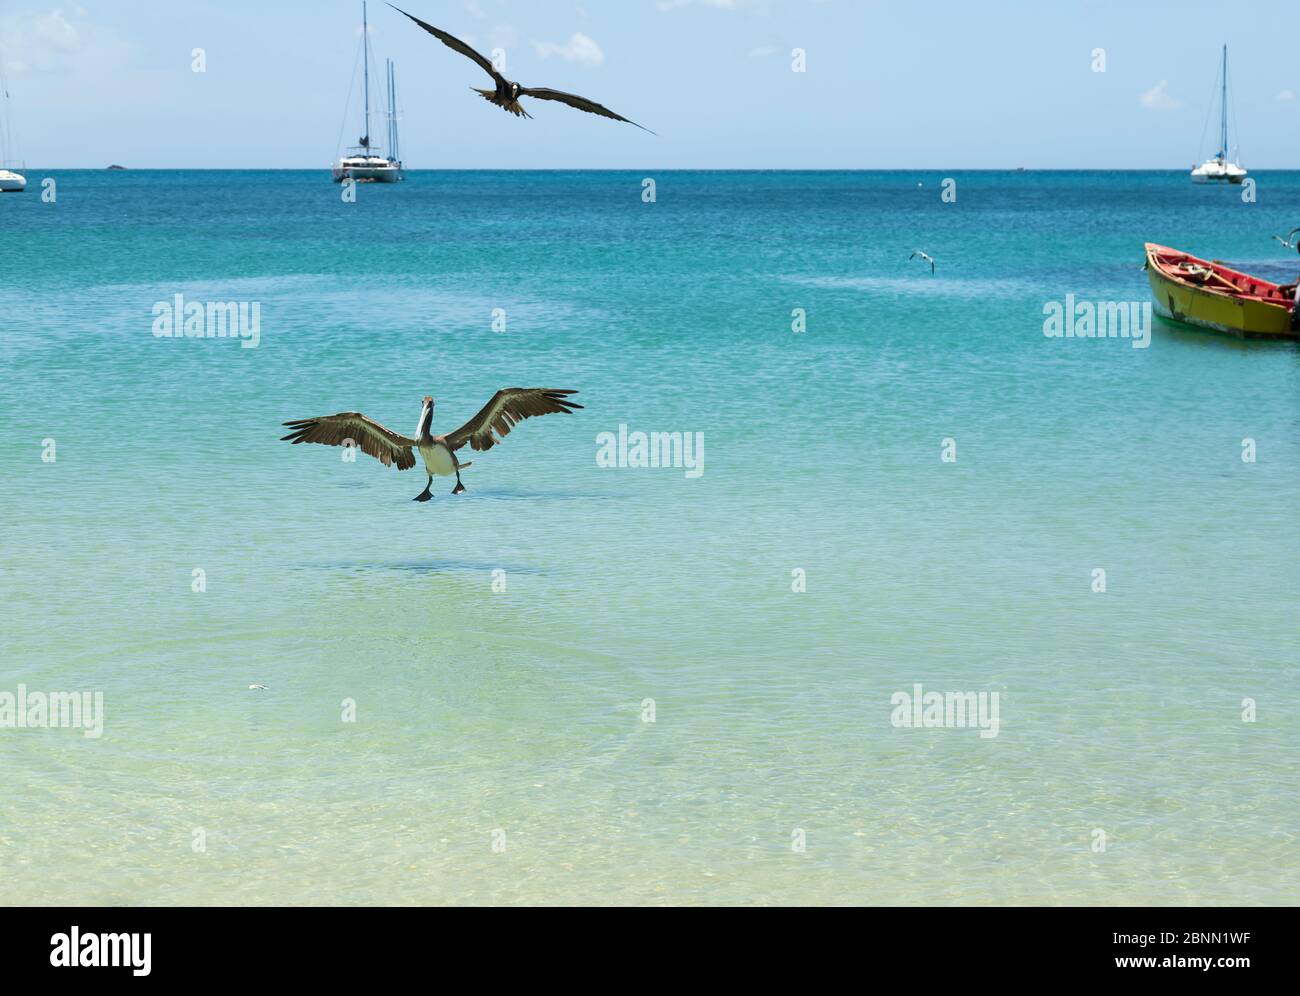 Un pellicano salta casualmente in avanti, fuori dall'acqua per ottenere un pesce mentre un uccello fregato sta saltando in alto per catturare il pasto Foto Stock